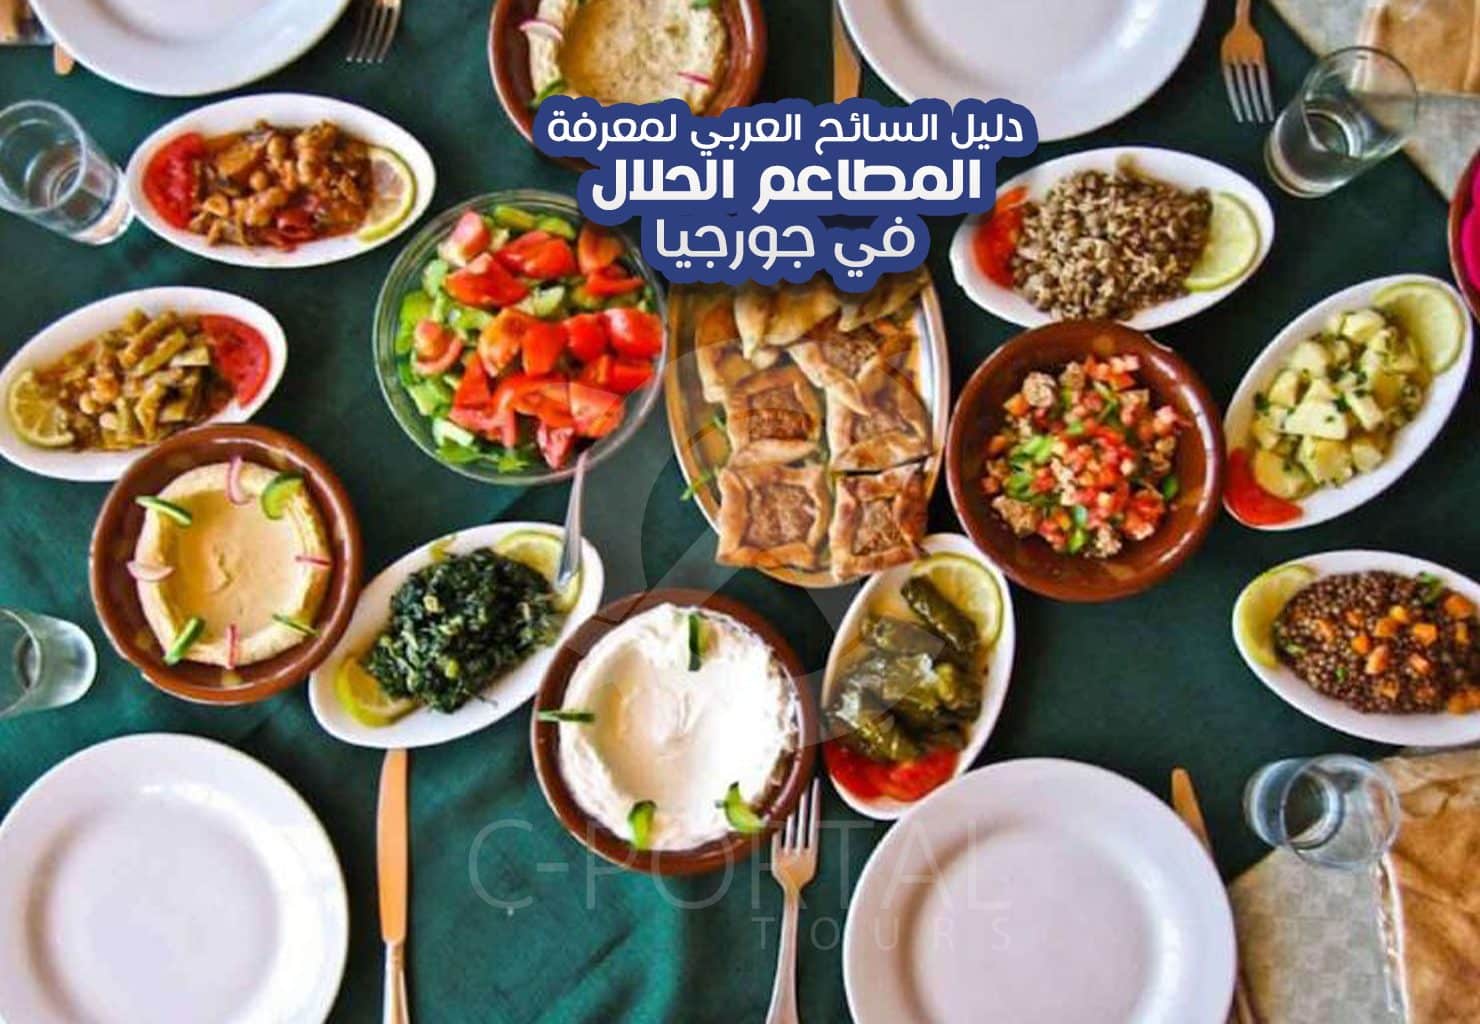 دليل-السائح-العربي-لمعرفة-المطاعم-الحلال-في-جورجيا-الصورة-الرئيسية